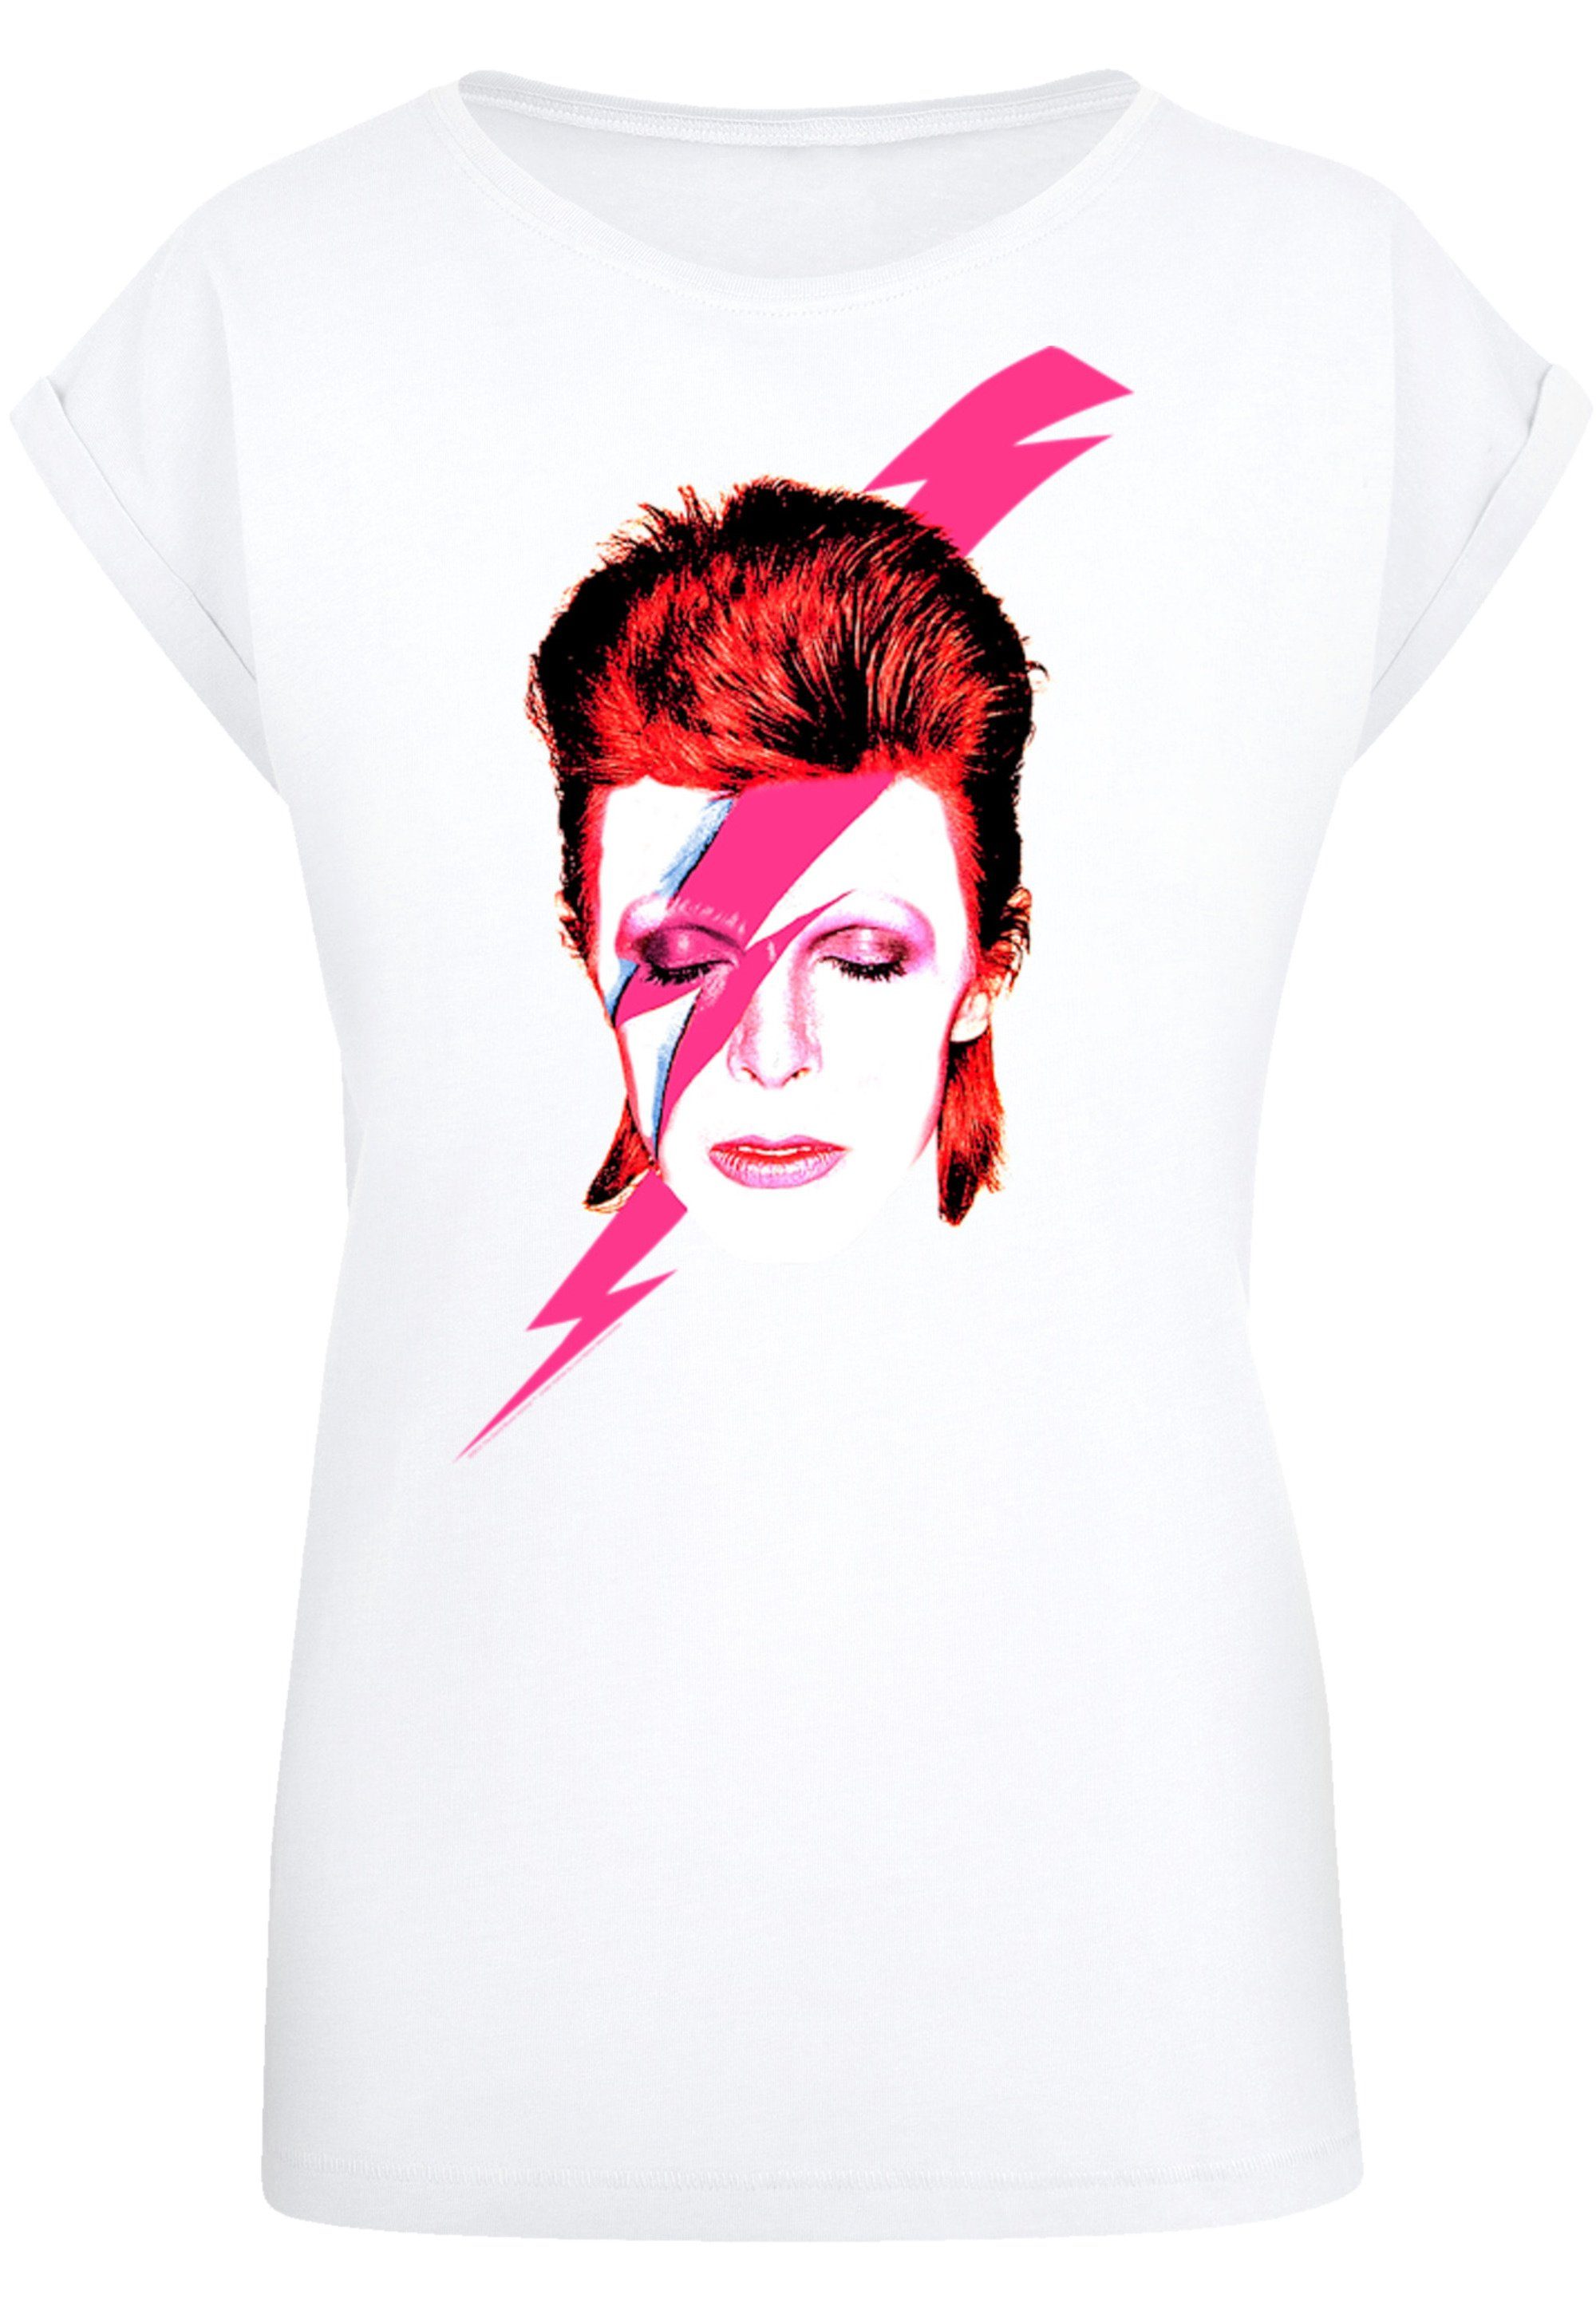 F4NT4STIC T-Shirt David Bowie Aladdin Sane Lightning Bolt Print, Das Model  ist 170 cm groß und trägt Größe M